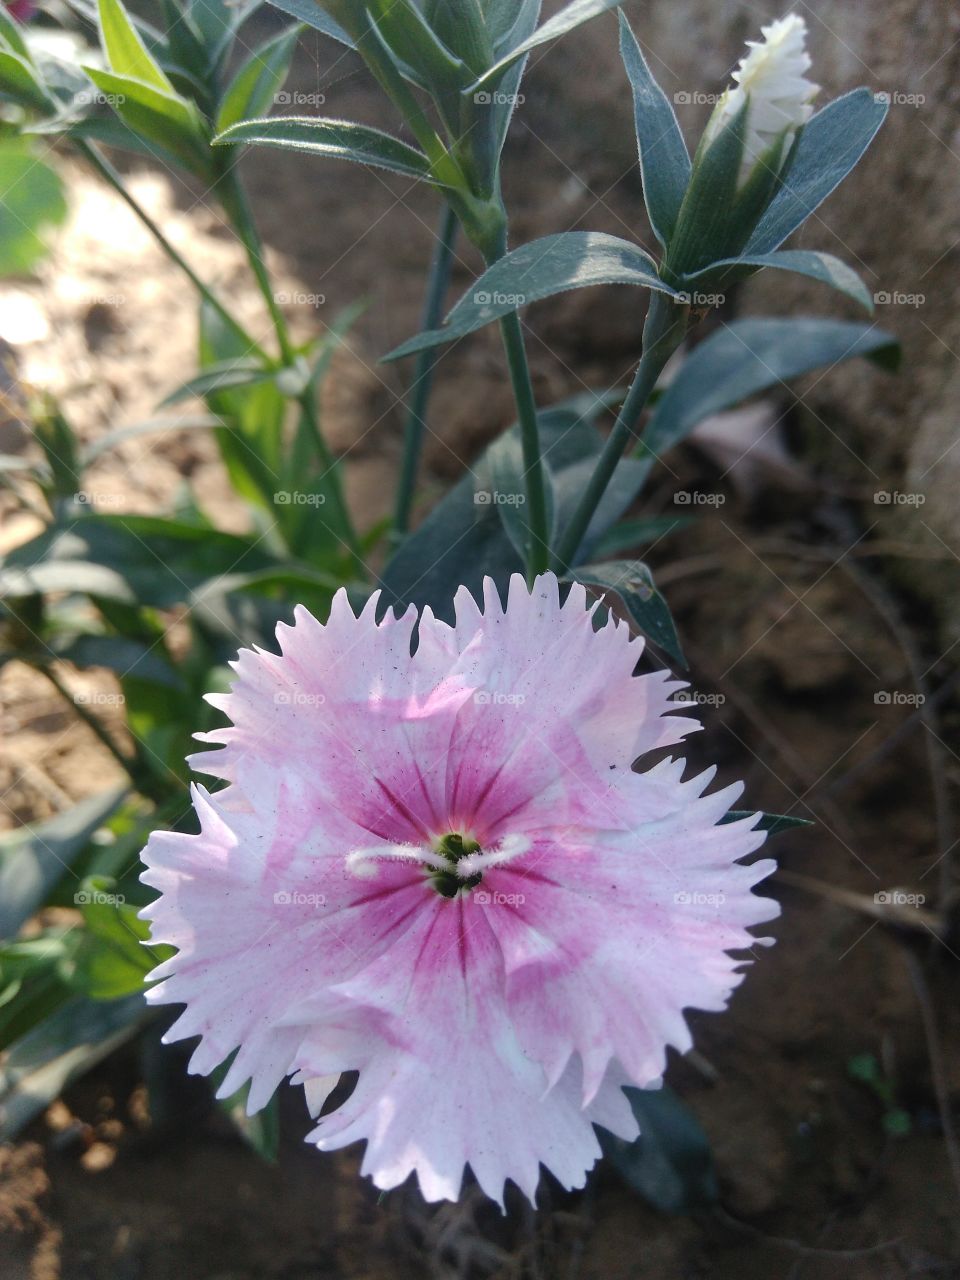 Pinkish white flower